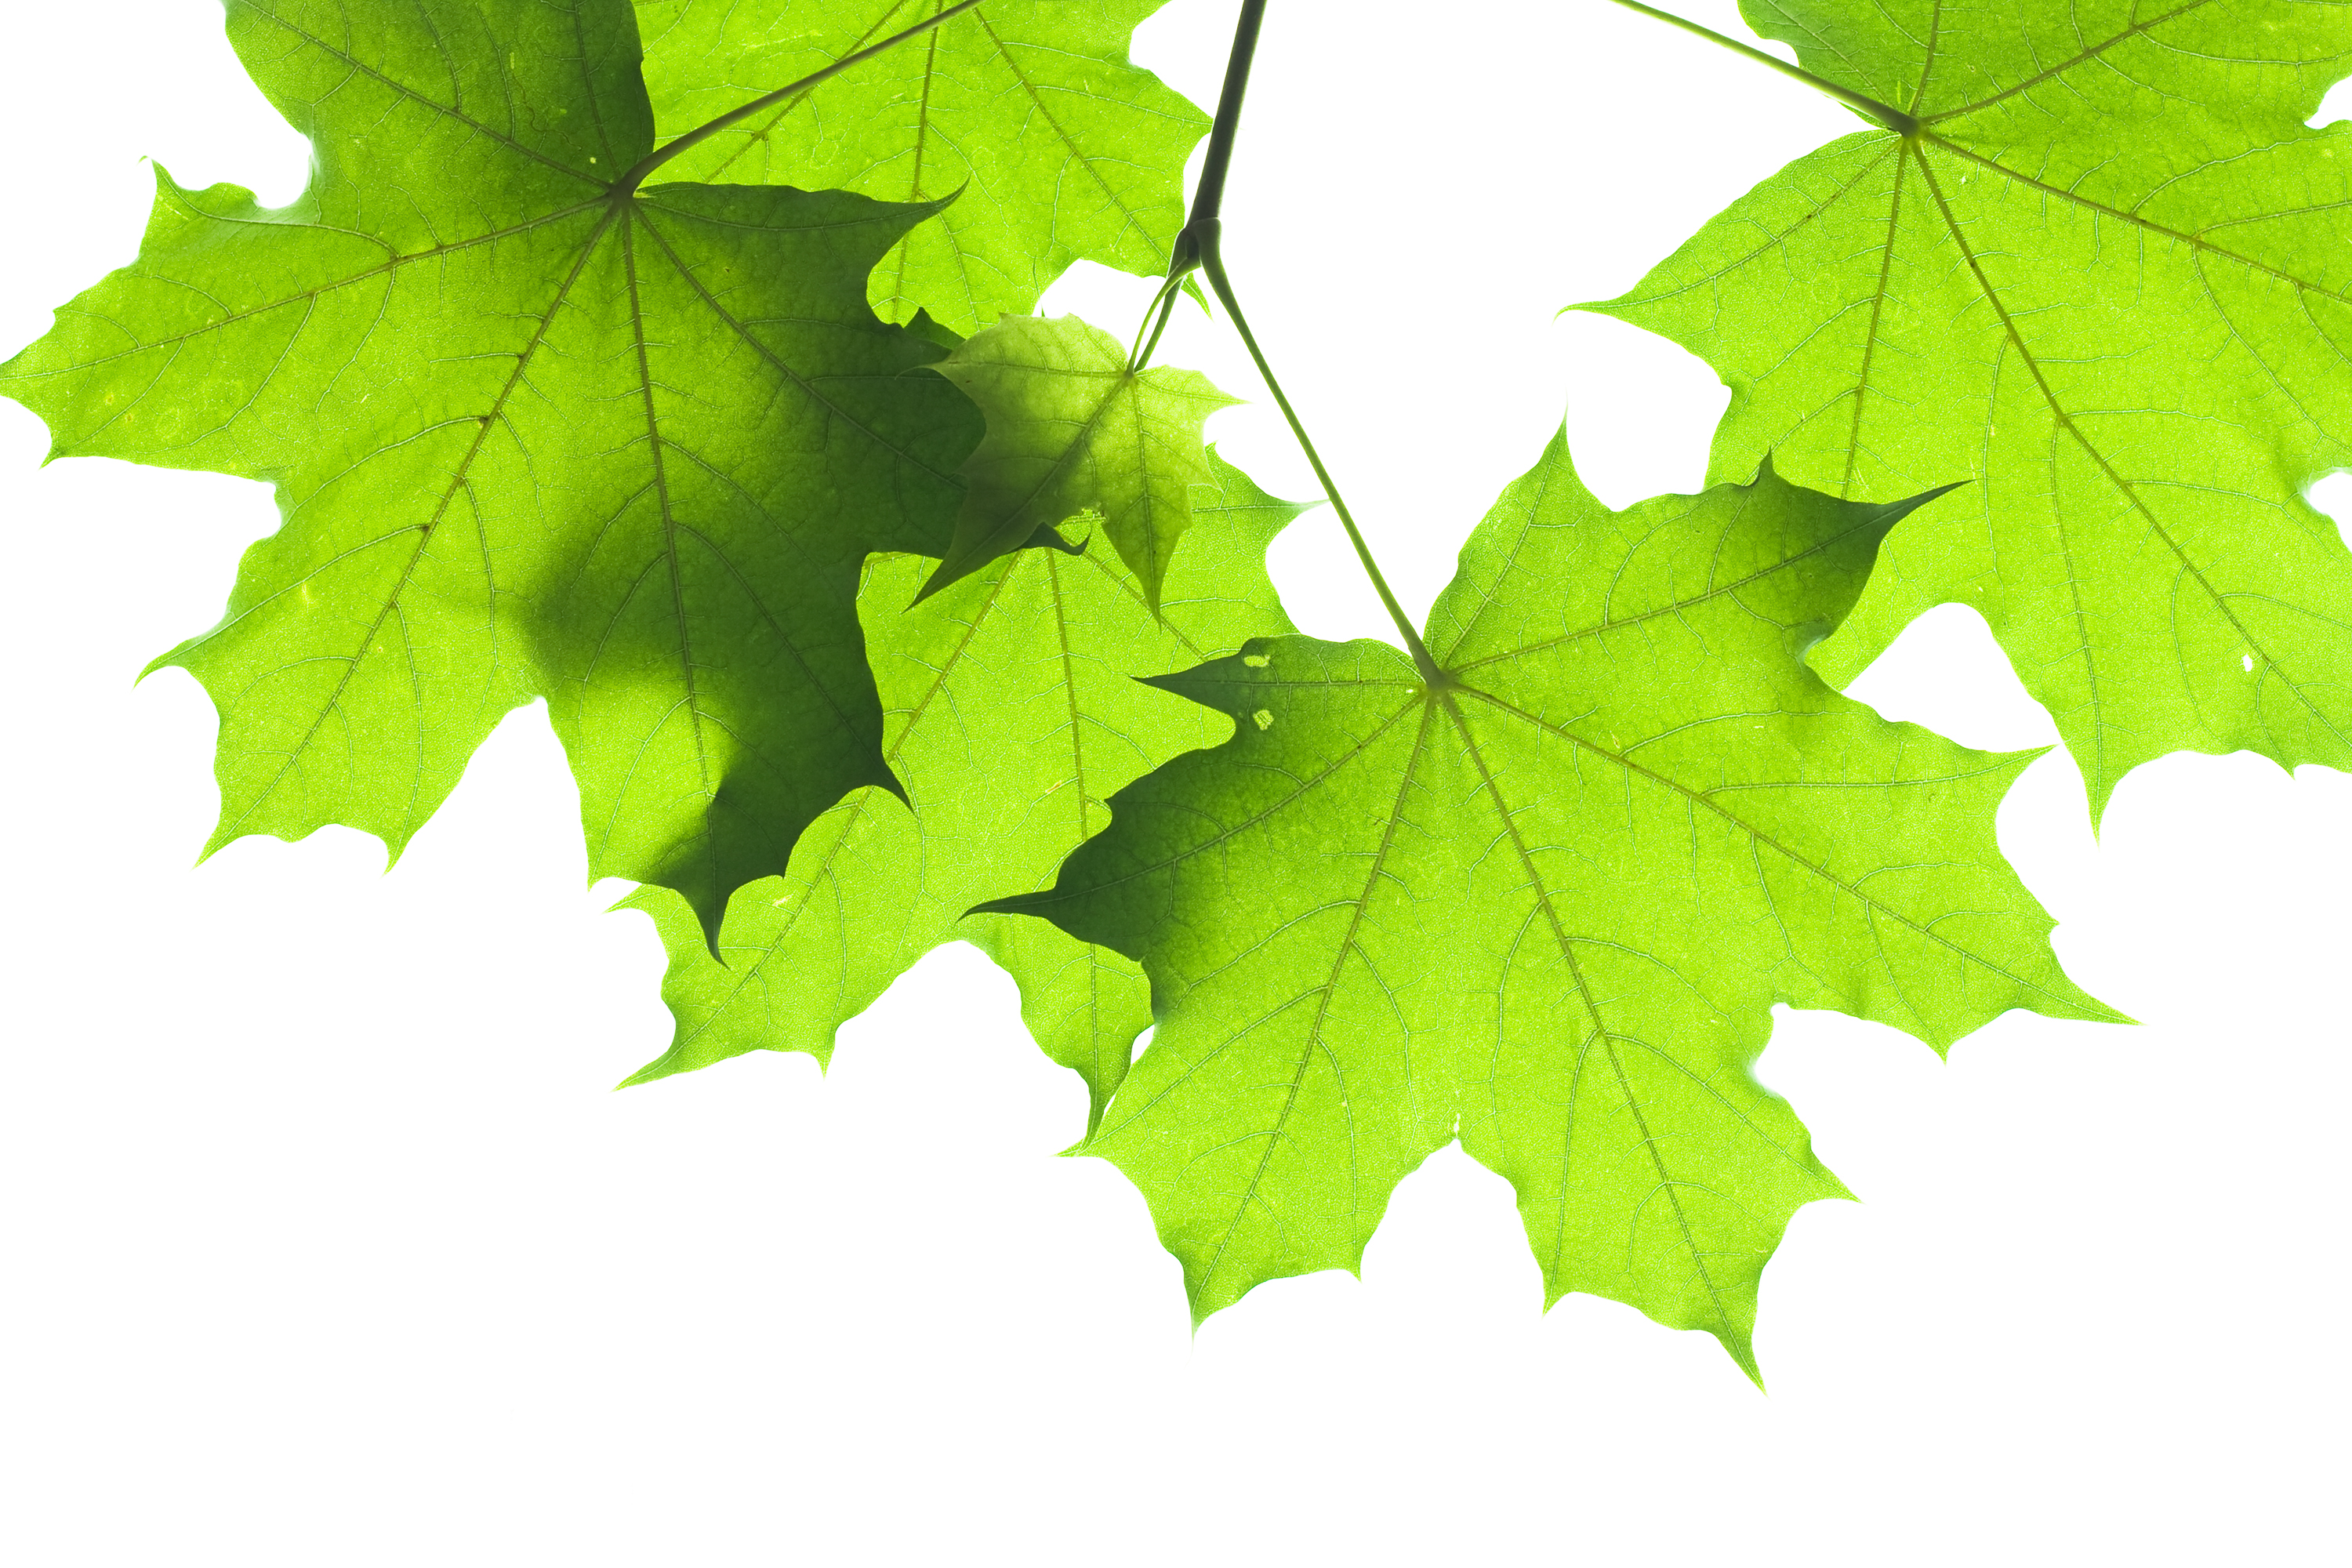 Green leaf photo